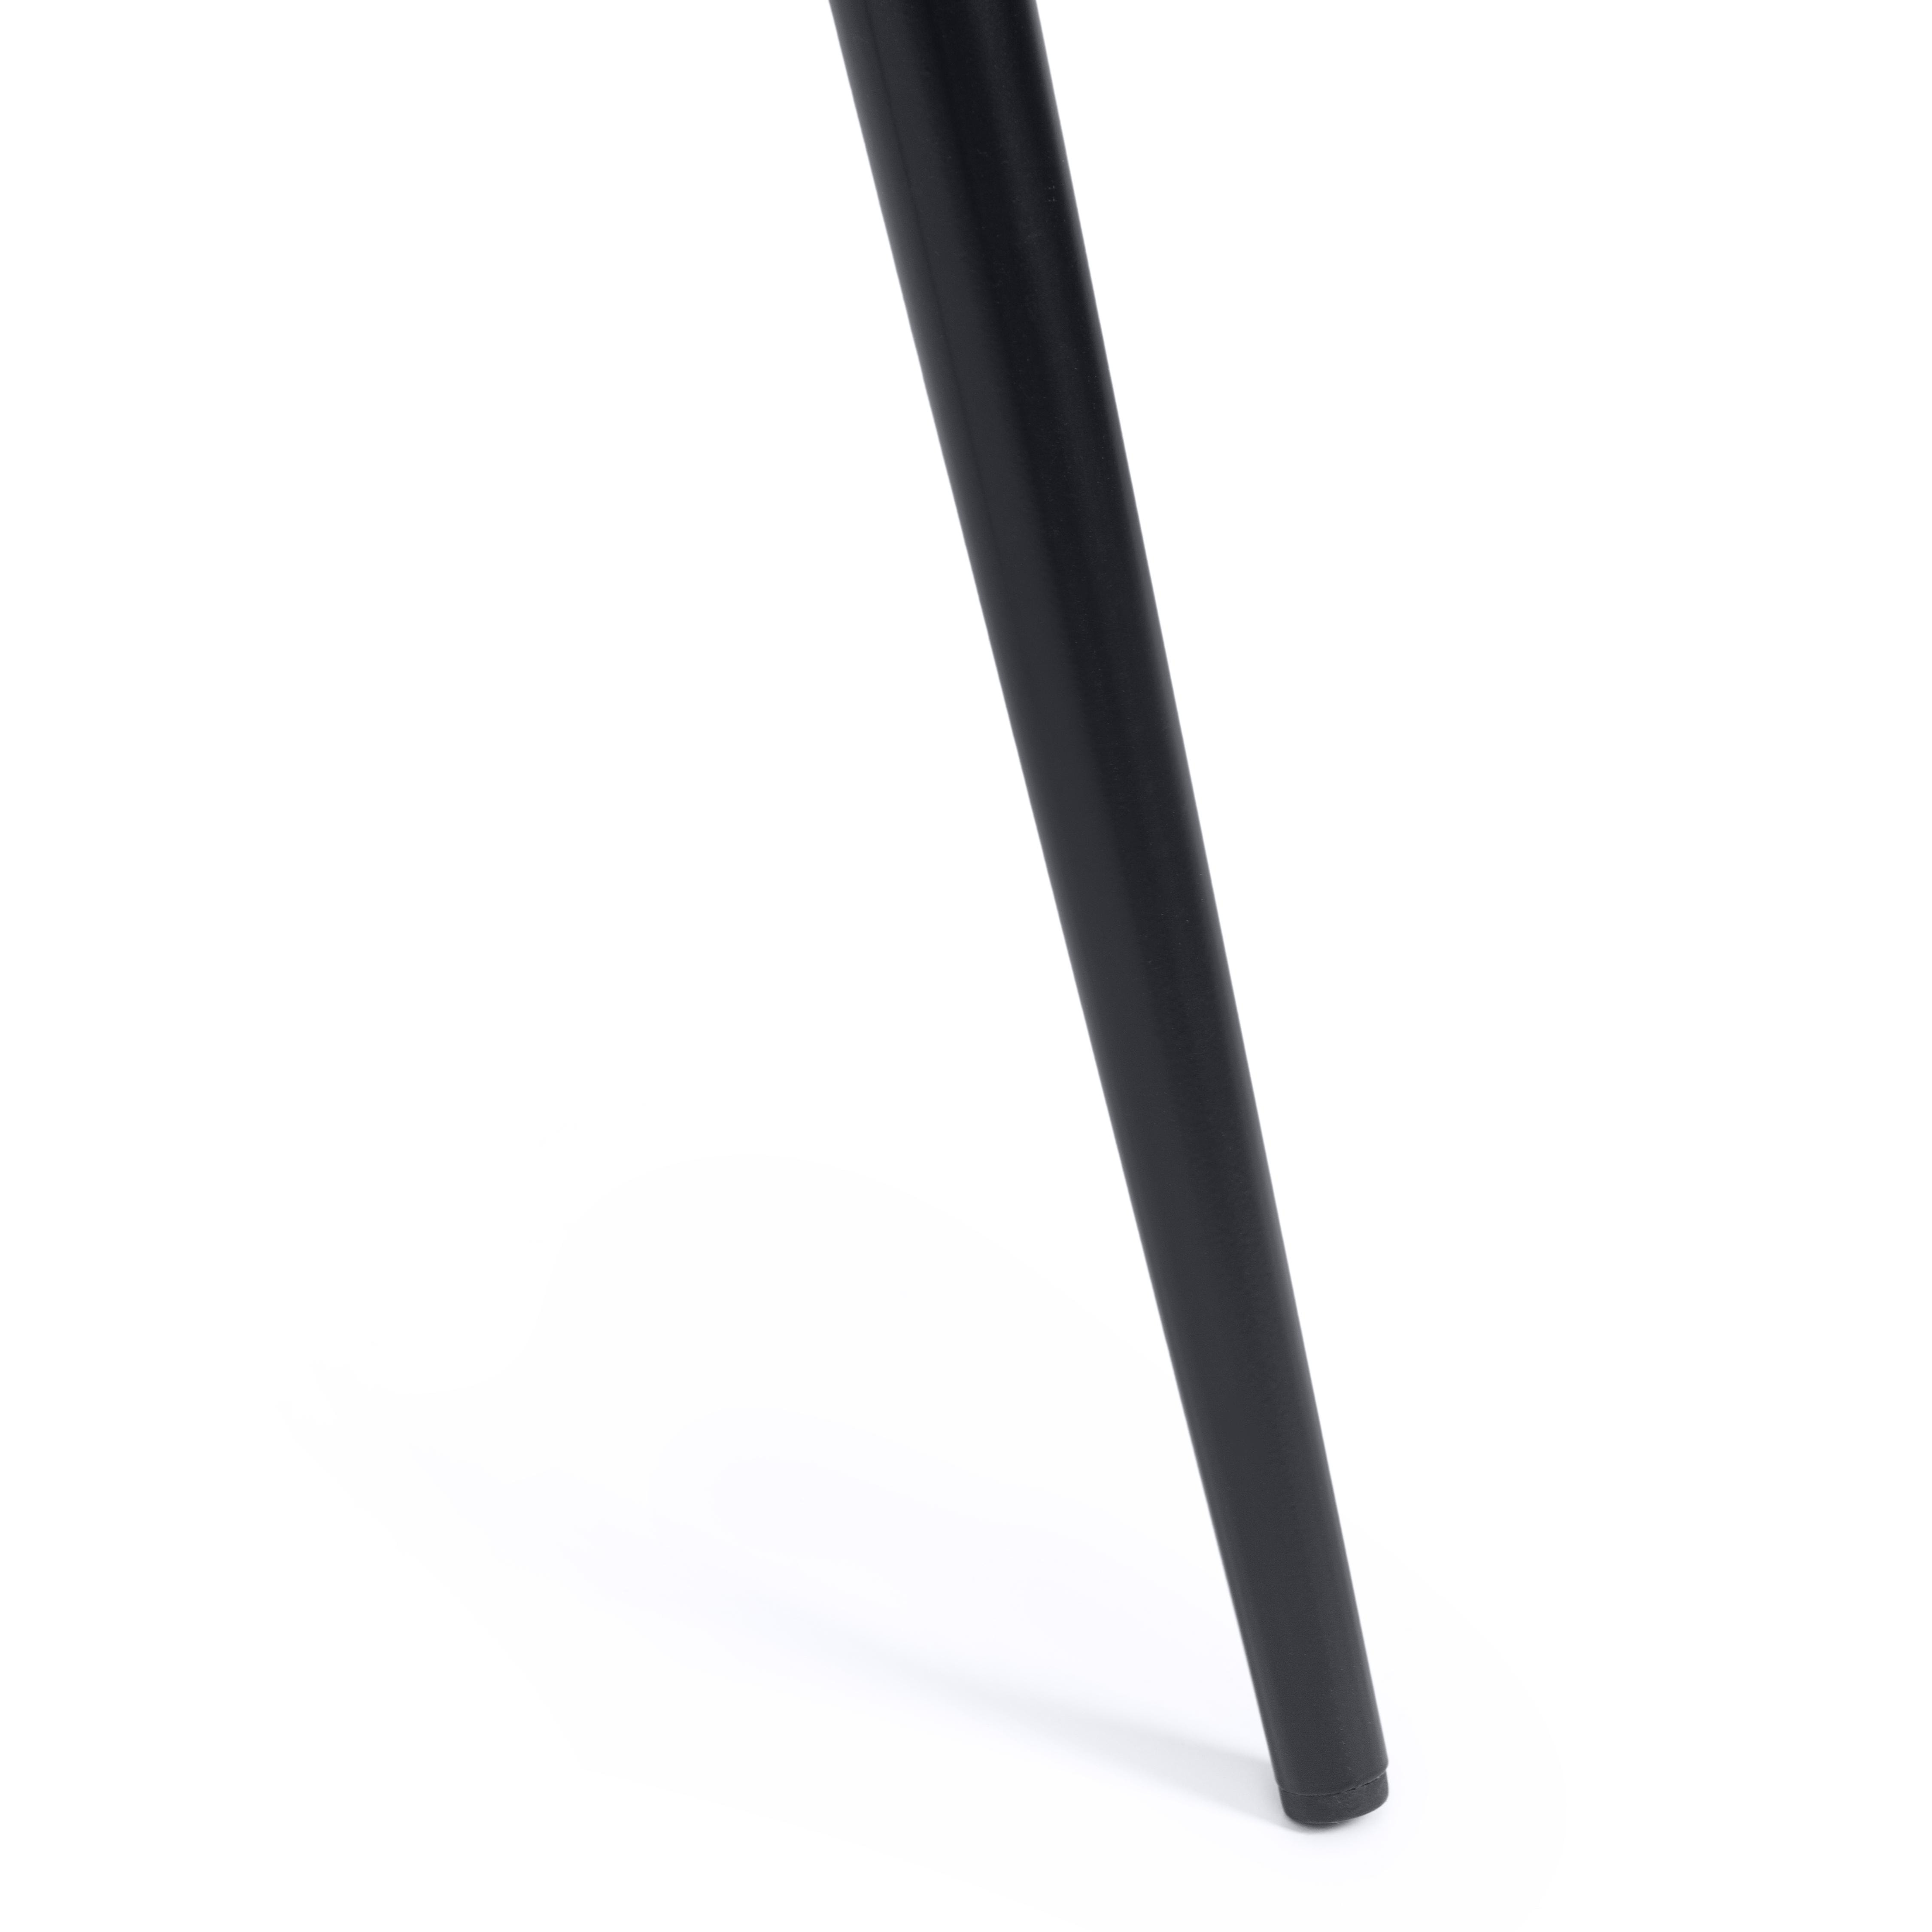 Стул CHILLY (mod. 7095-1) ткань/металл, 45x53х88 см, высота до сиденья 50 см, серый barkhat 26/черный